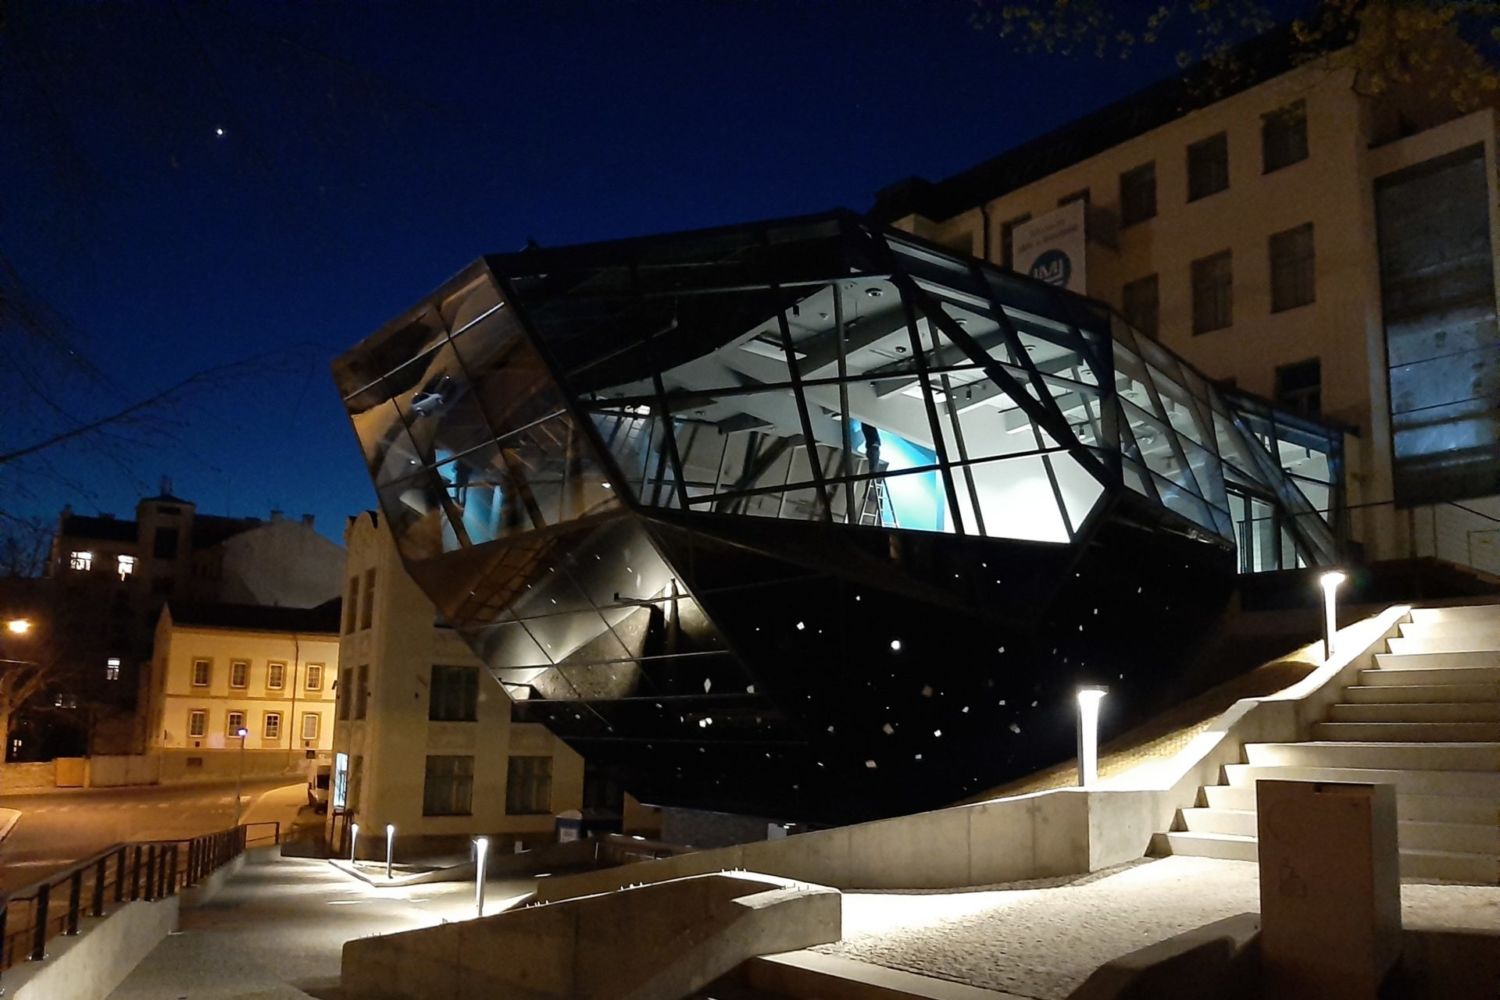 Nová skleněná přístavba Muzea skla a bižuterie v Jablonci nad Nisou - večerní pohled zvenčí